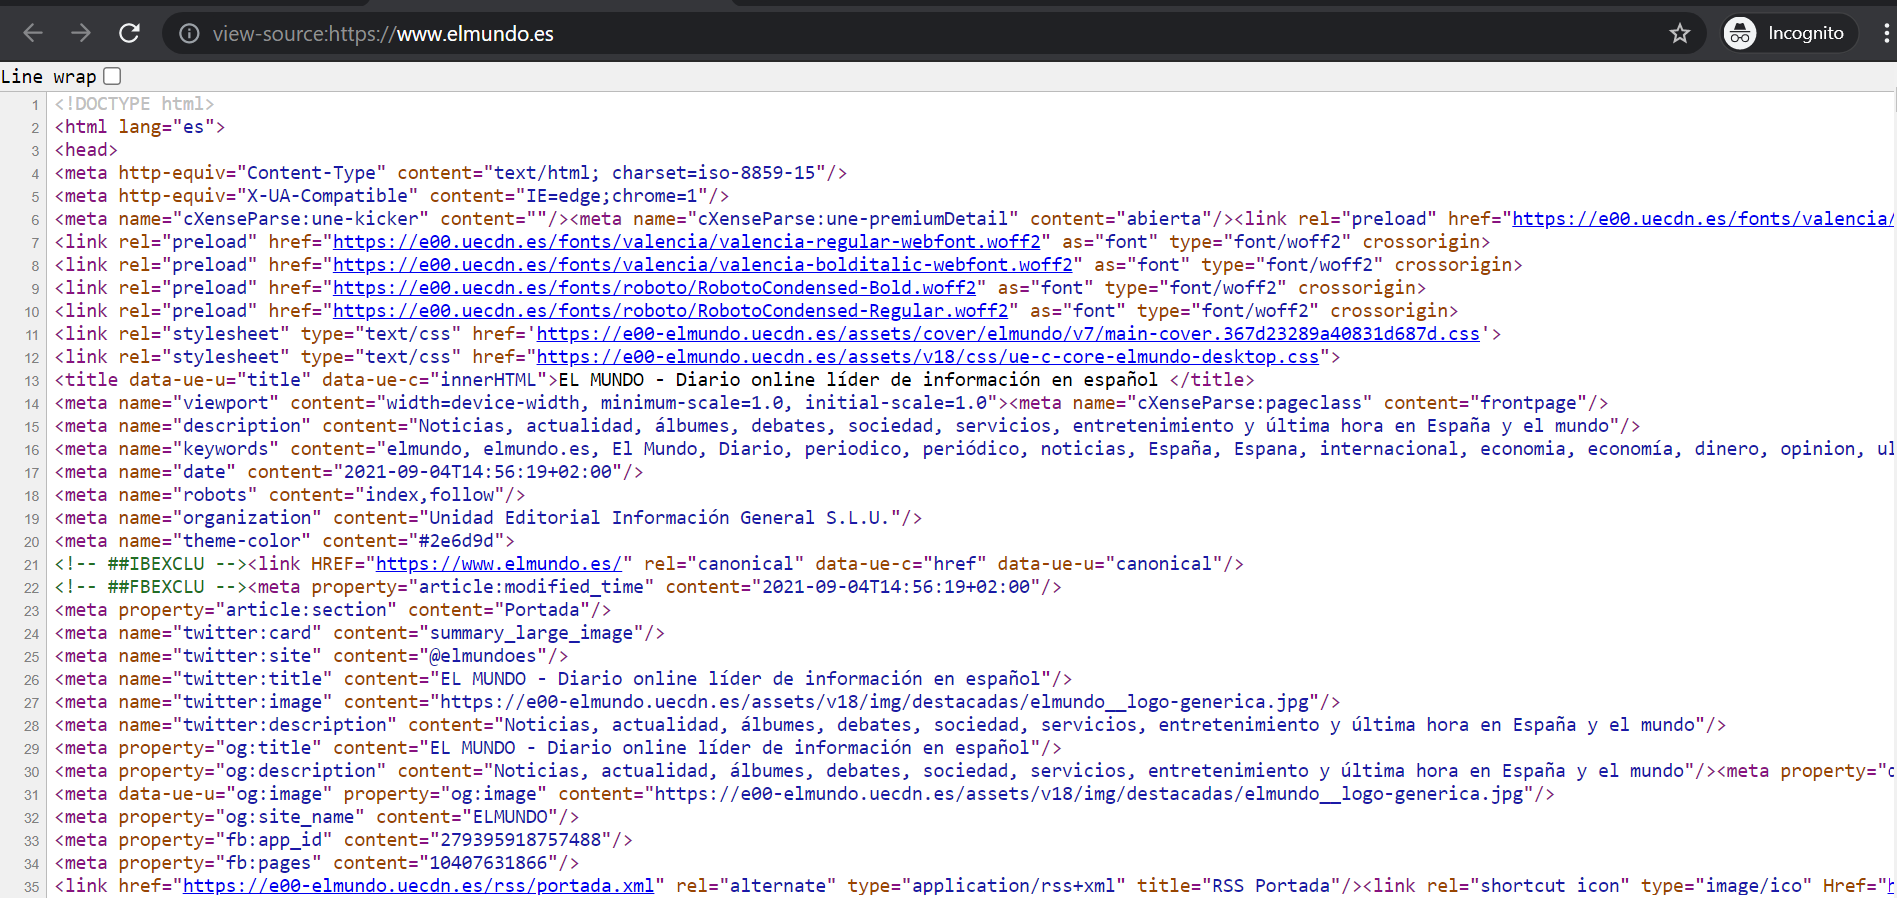 ¿Cómo ver el código fuente de una página web?